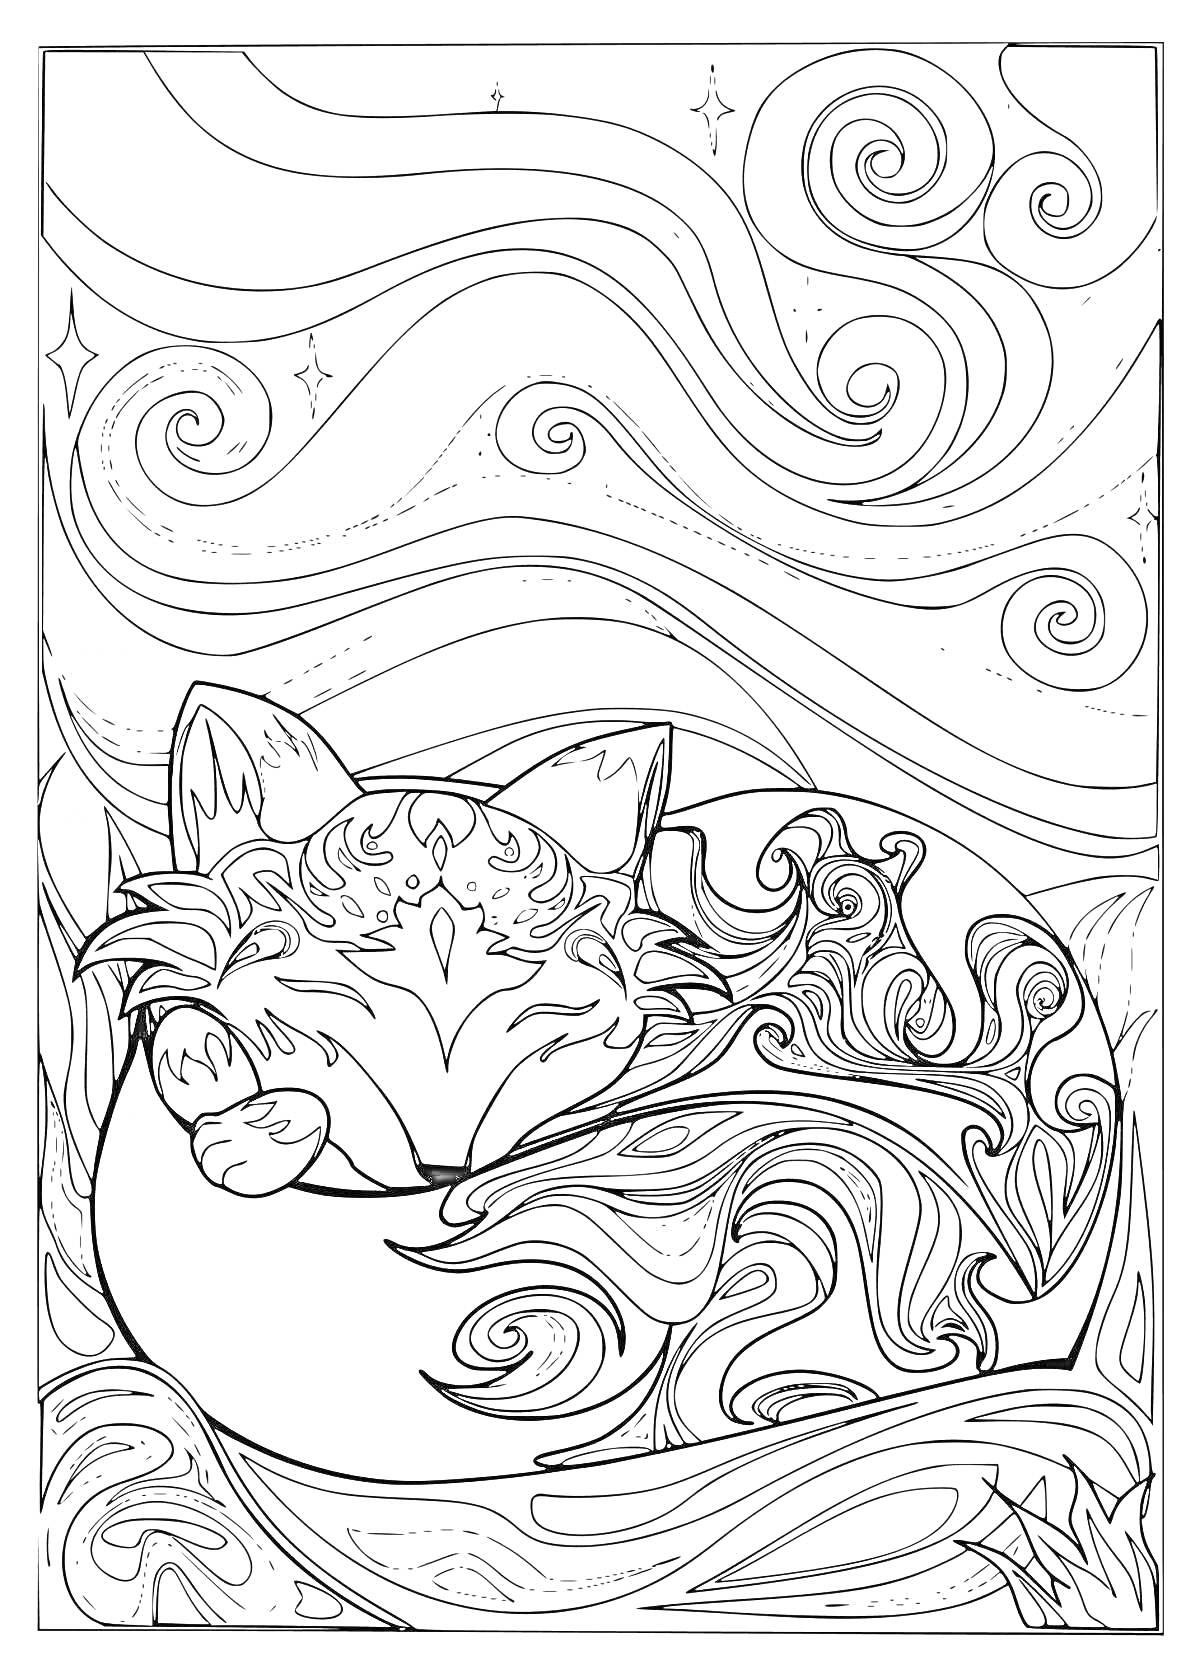 Раскраска Спящая лисичка в окружении завитков и звезд